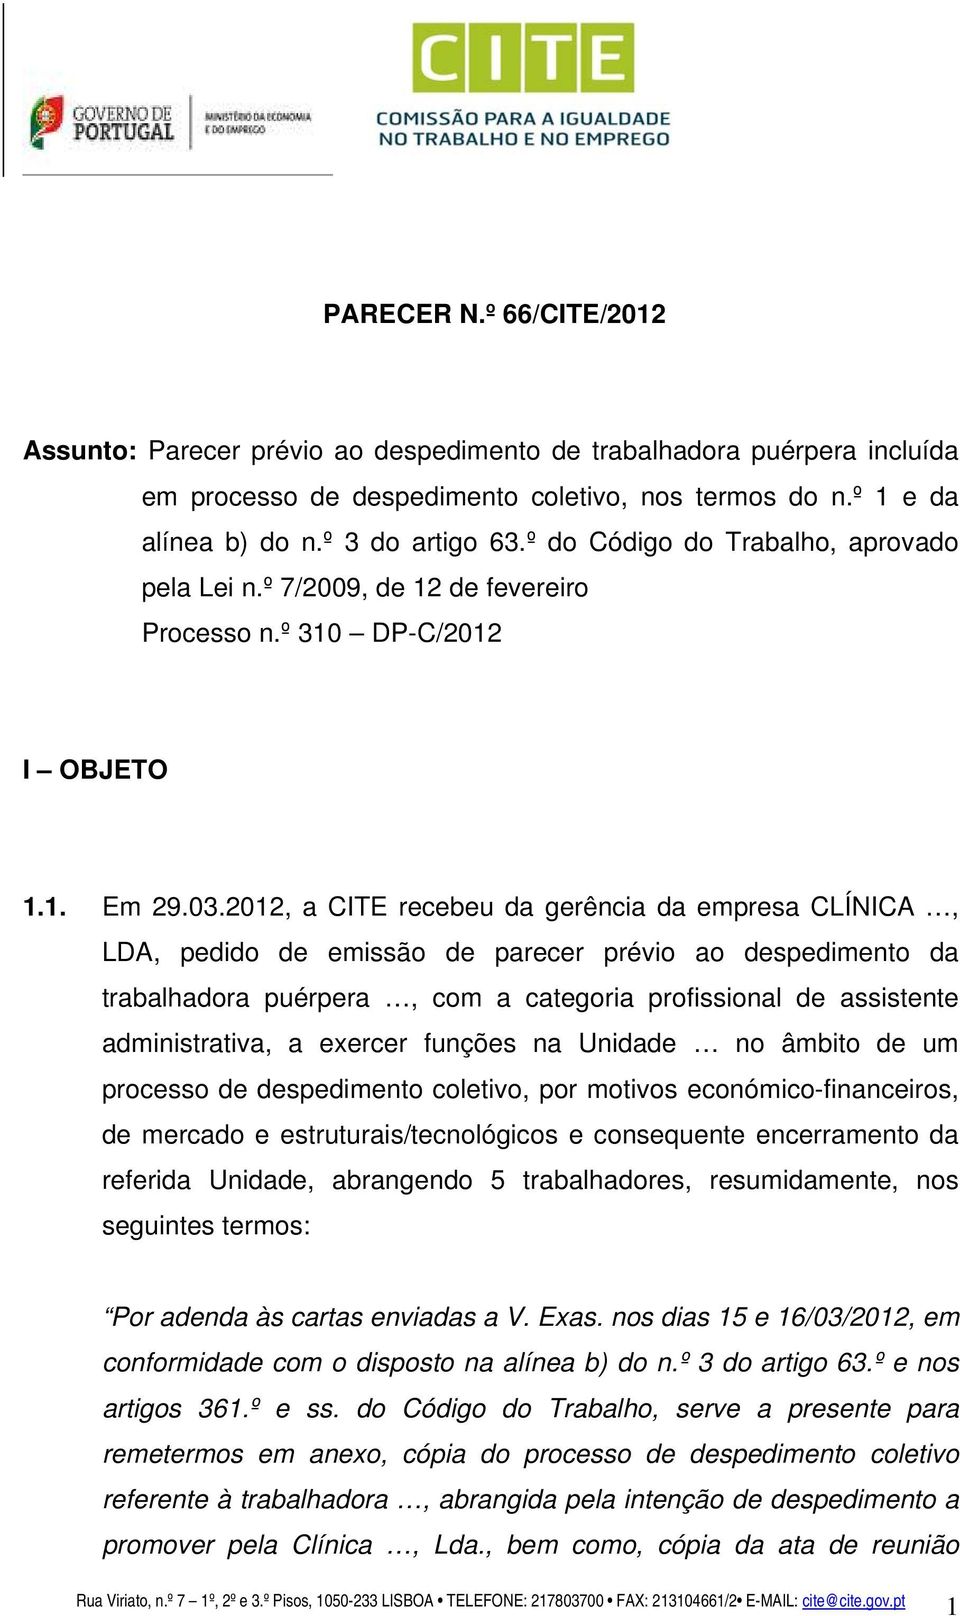 2012, a CITE recebeu da gerência da empresa CLÍNICA, LDA, pedido de emissão de parecer prévio ao despedimento da trabalhadora puérpera, com a categoria profissional de assistente administrativa, a